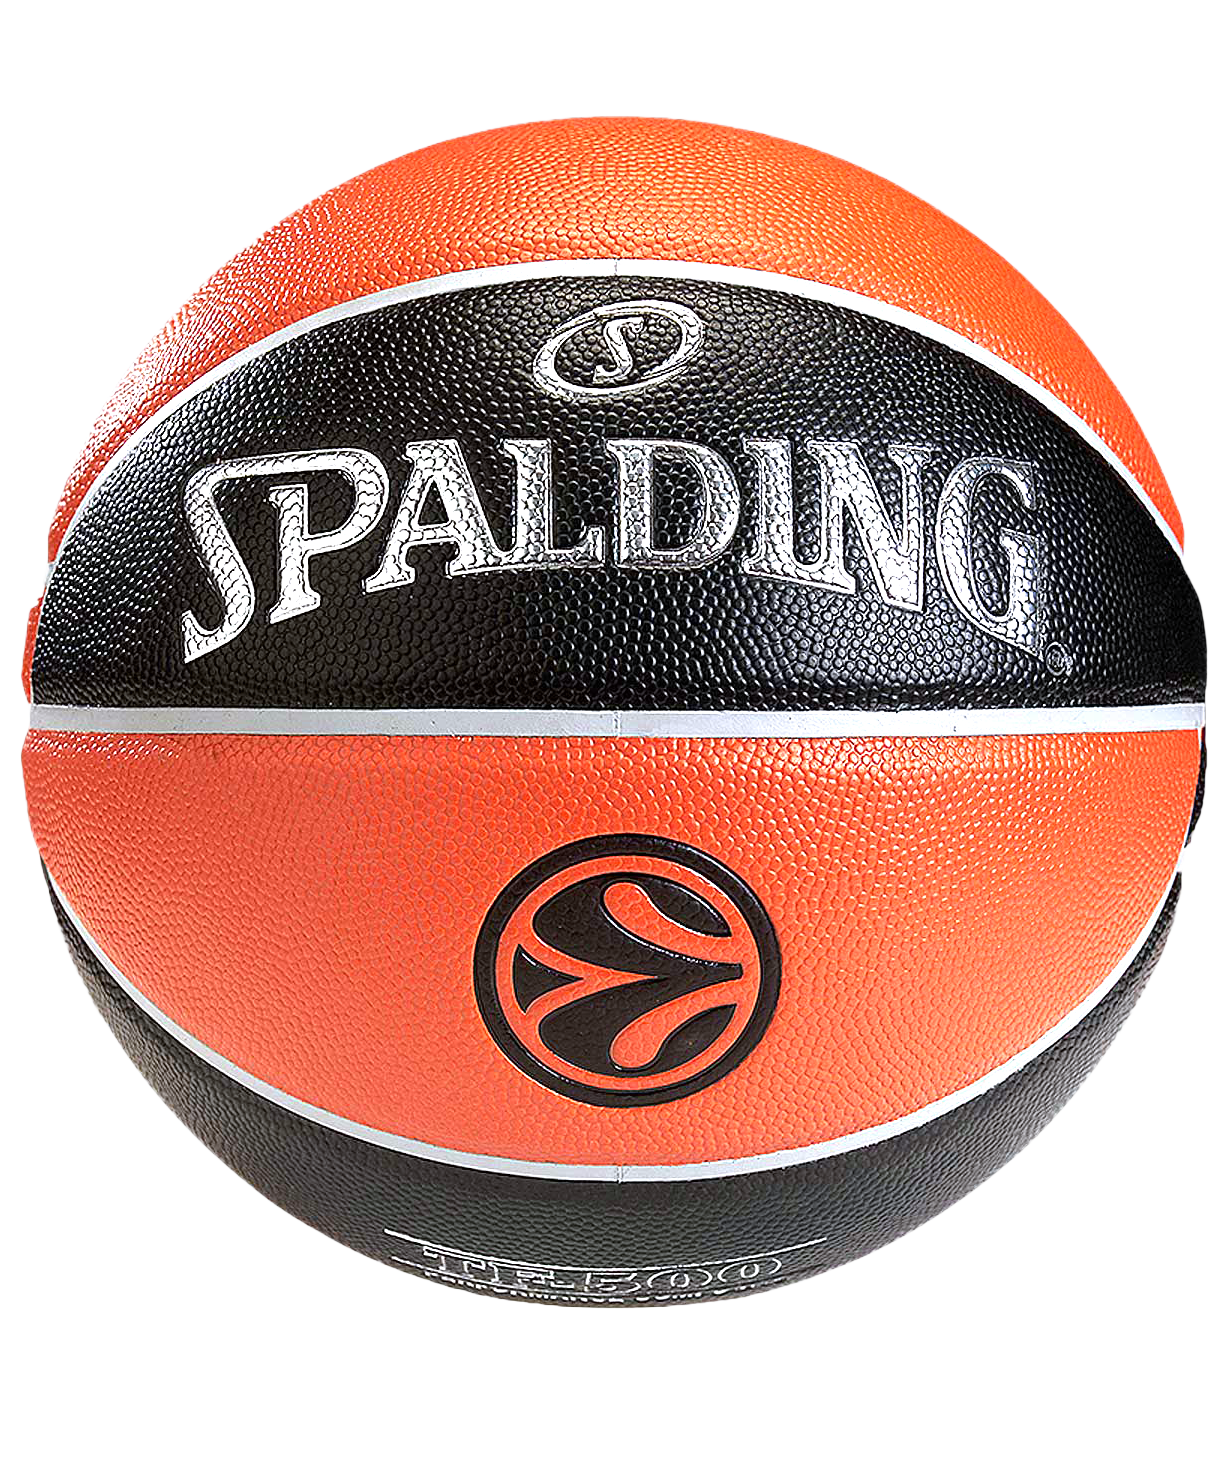 Bola de basquete spalding euroleague oficial tf-1000 74-538z, n° 7 (7) -  AliExpress